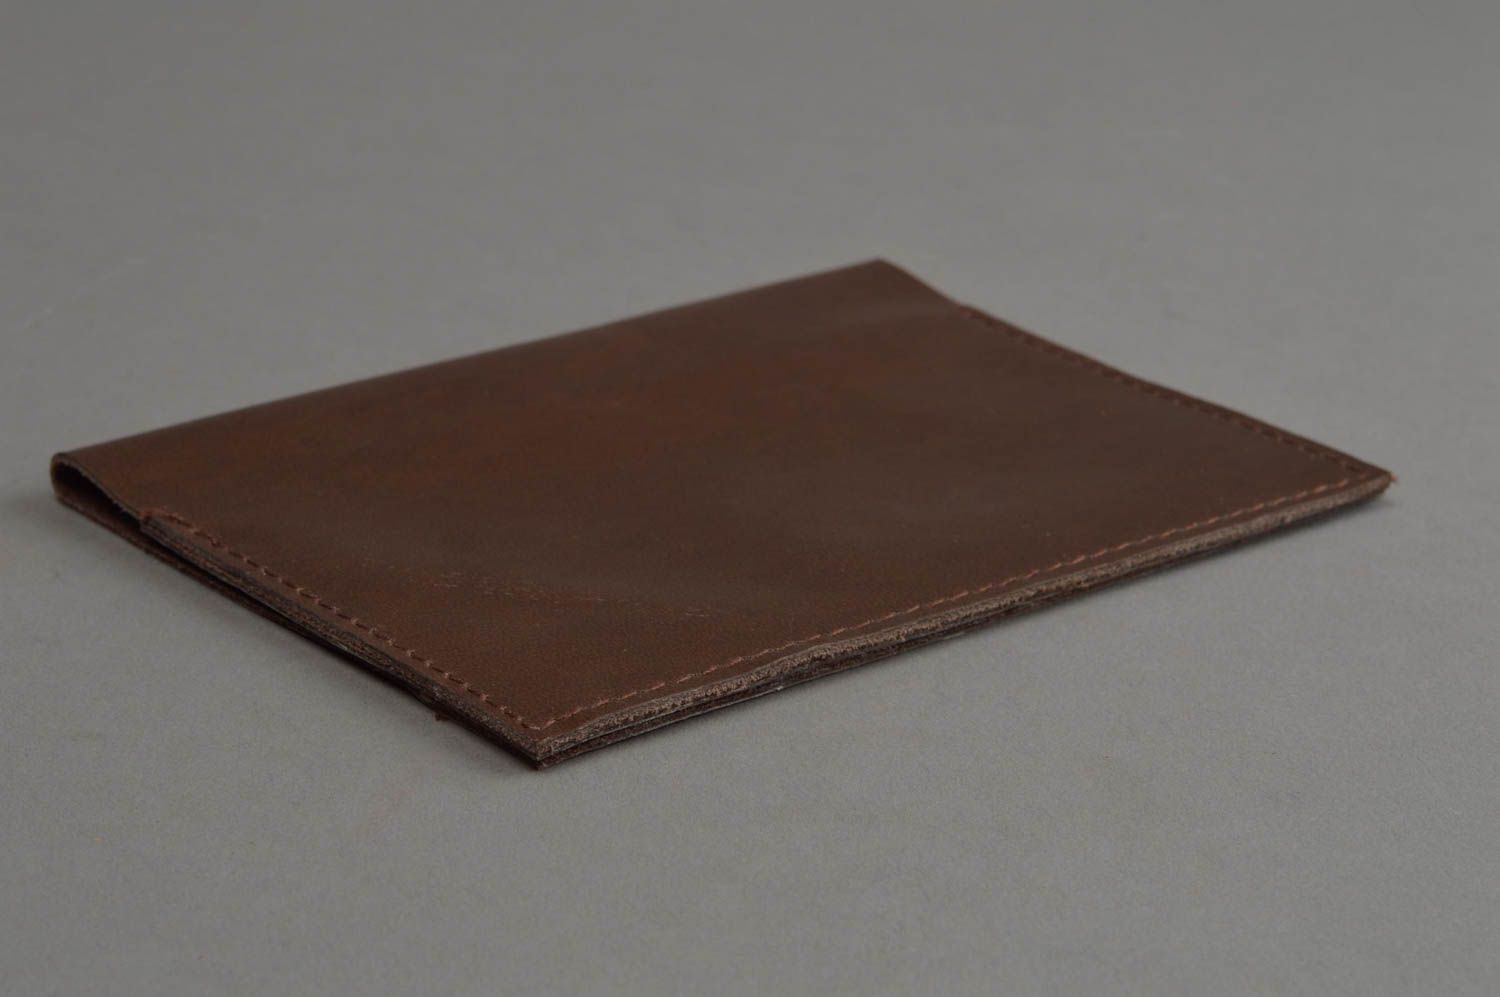 Porte-passeport en cuir fait main pour femme naturel design laconique brun foncé photo 2